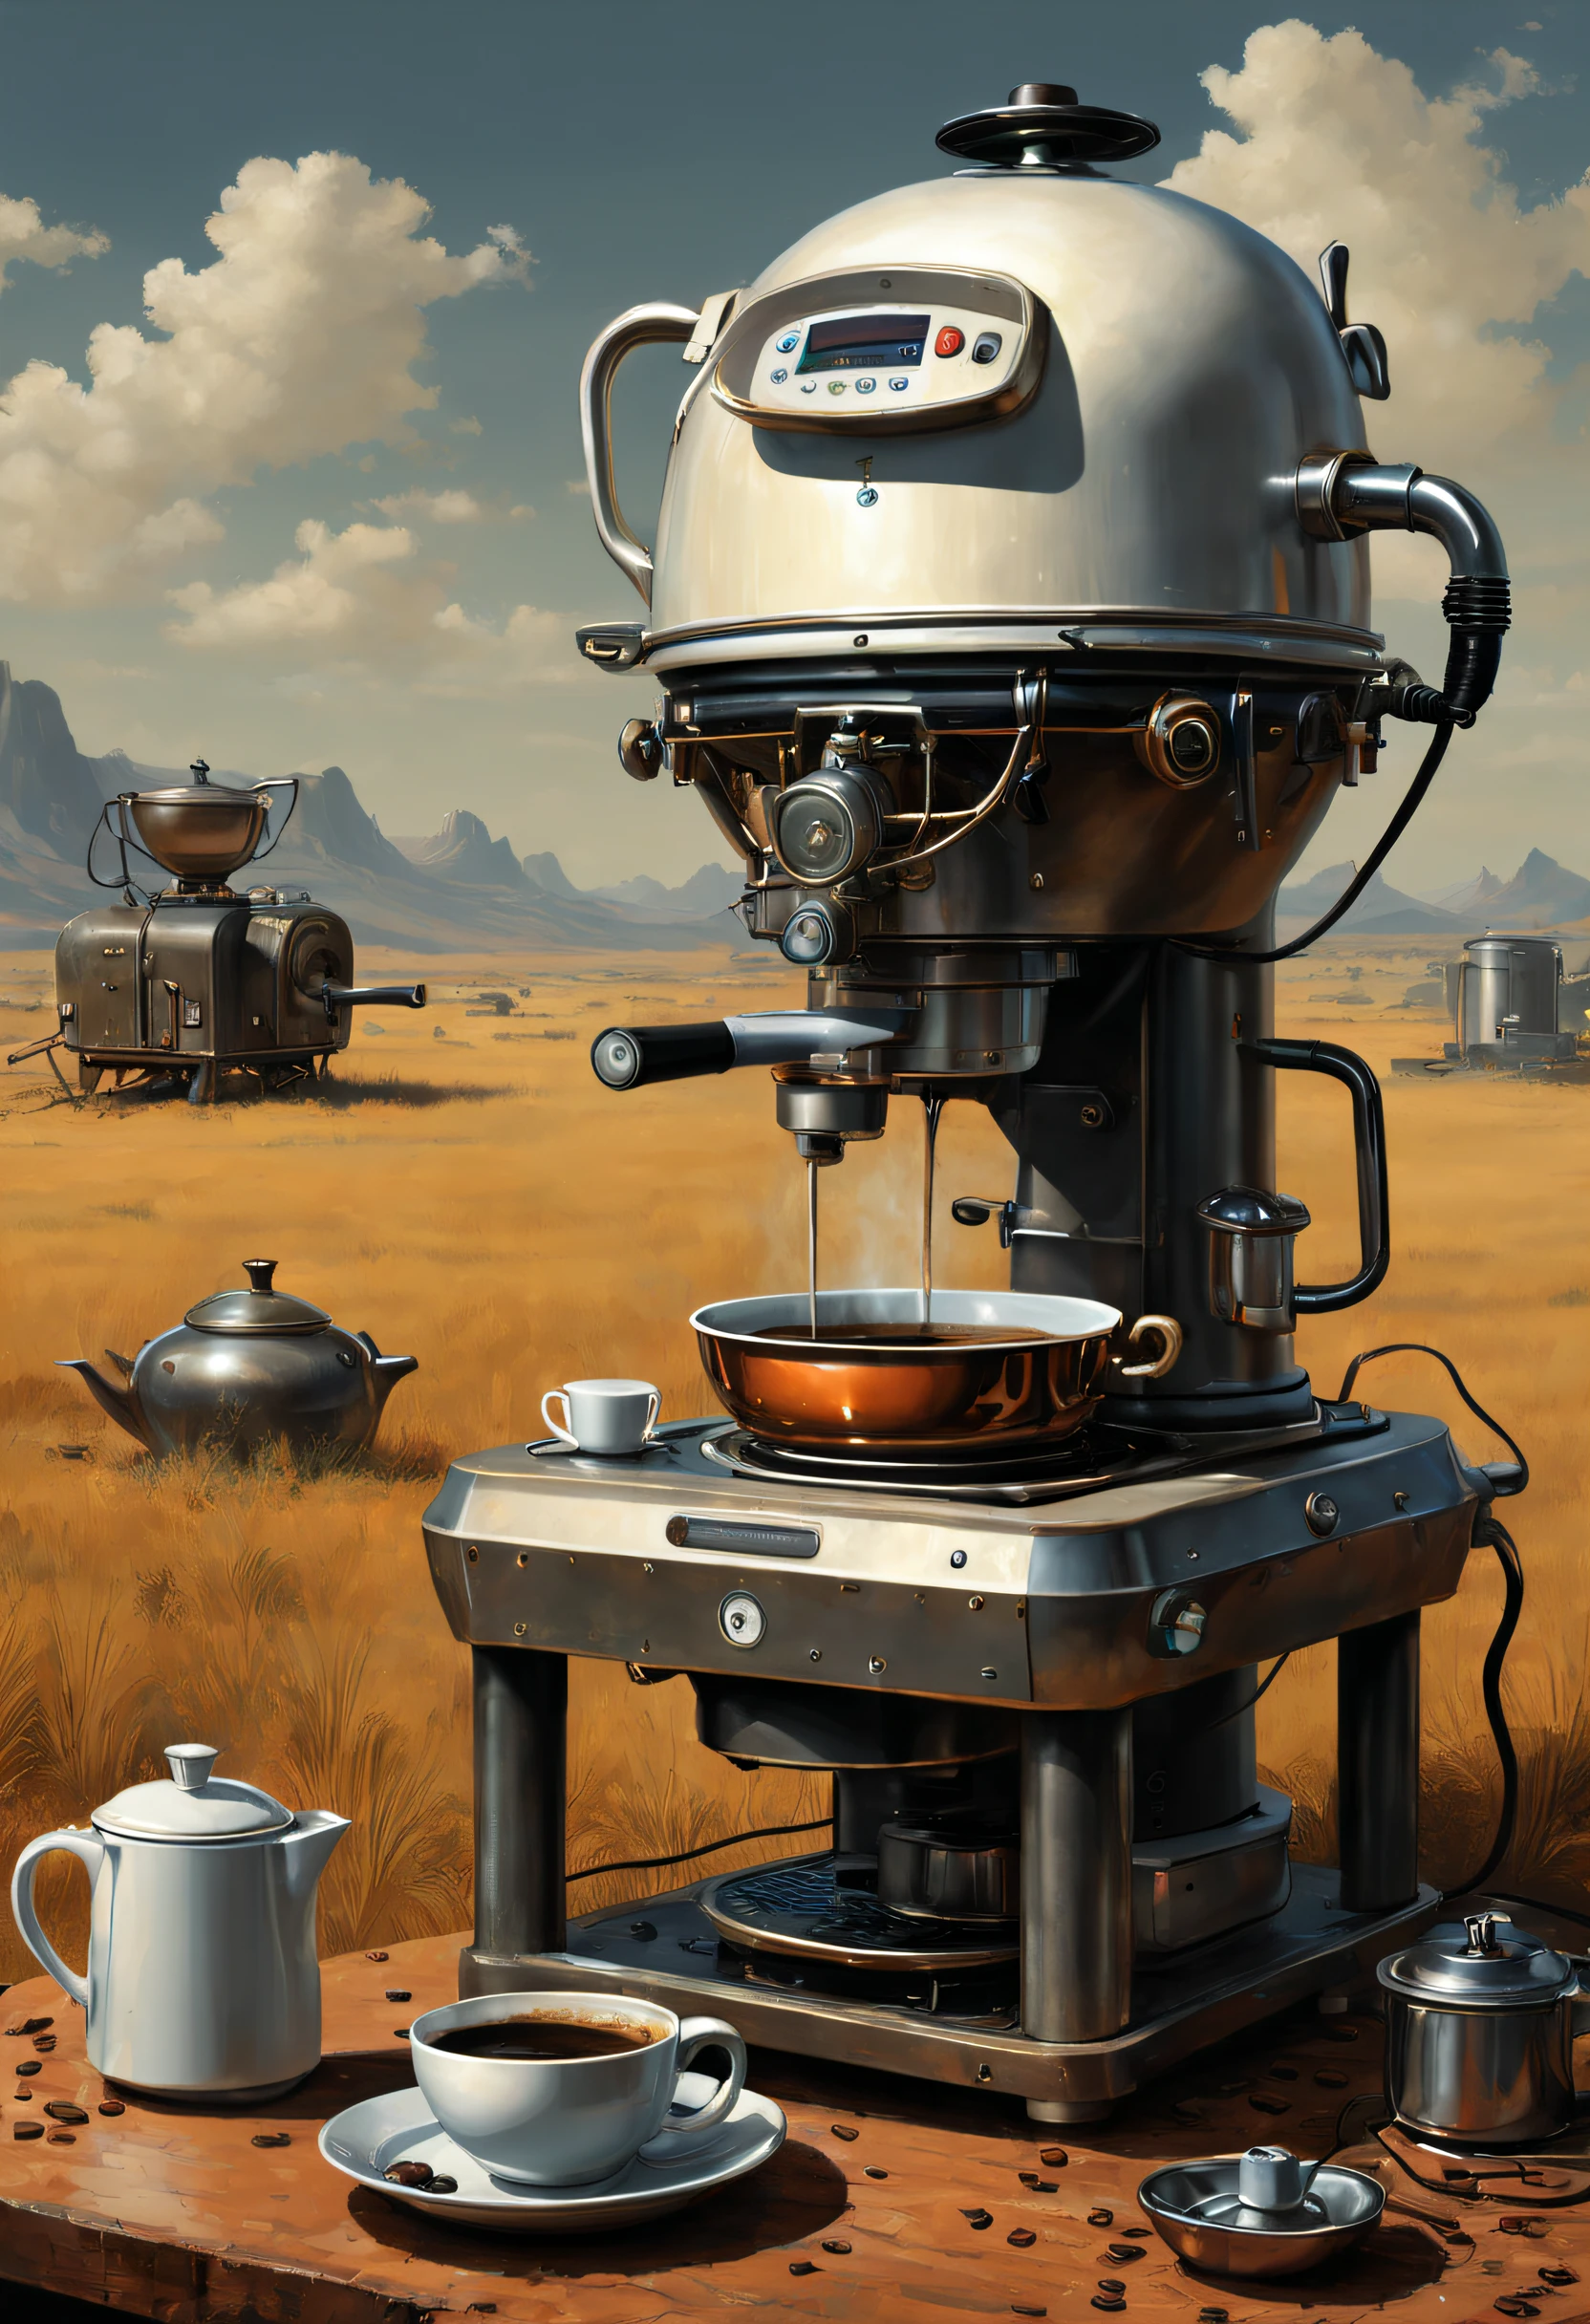 （Máquinas de café），（Hervidor eléctrico），（máquina de molienda），（olla arrocera），tierras baldías, arte de ciencia ficción, Dennis Ruston